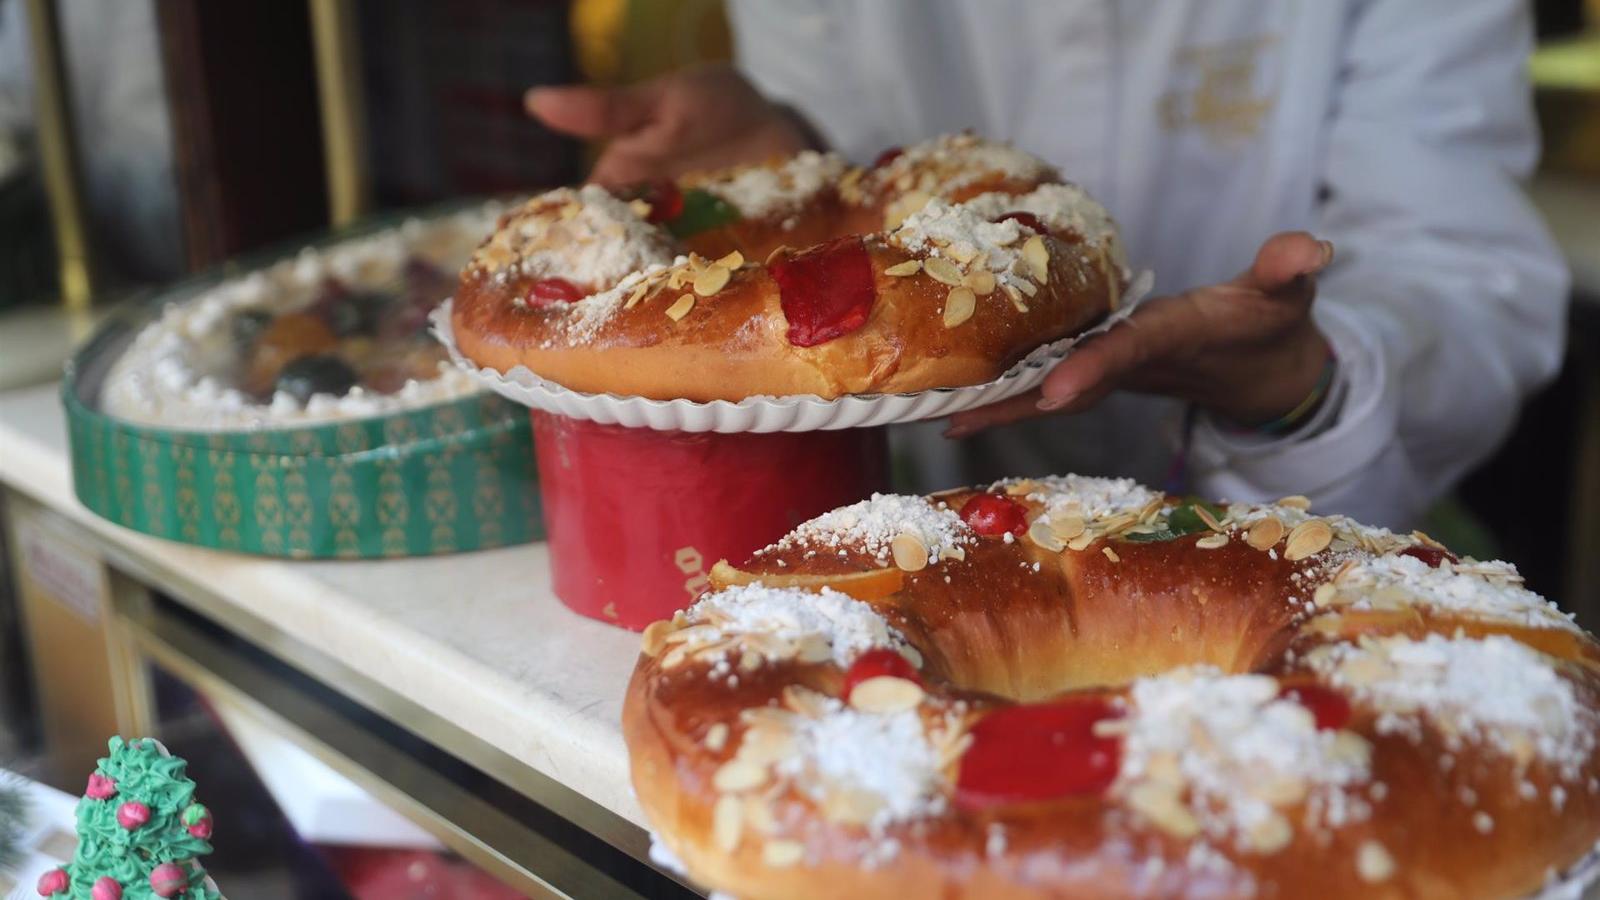 Las cerca de 600 pastelerías artesanas madrileñas estiman vender 2,5 millones de unidades del roscón de Reyes